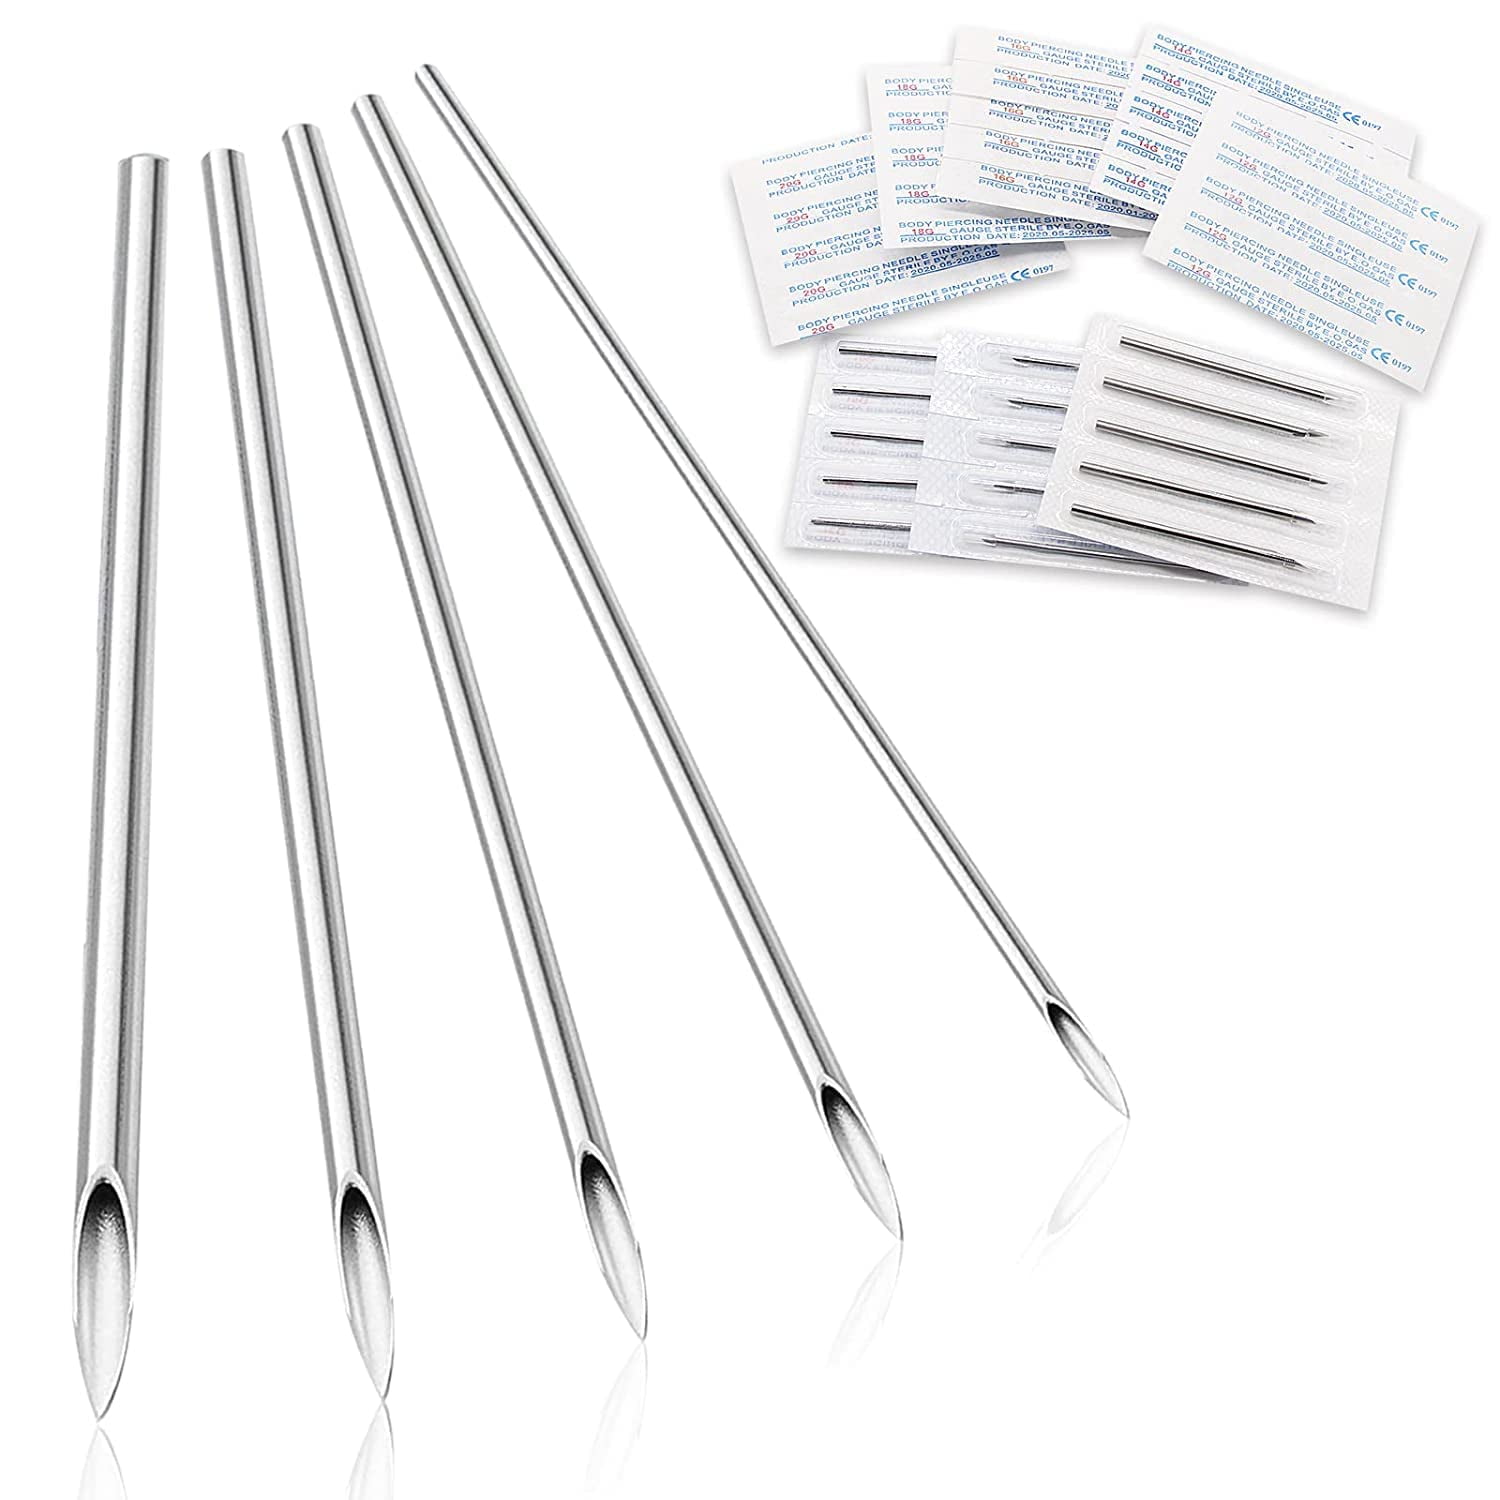 Piercing Tools, Piercing Equipment, Piercing Needles, Wholesale